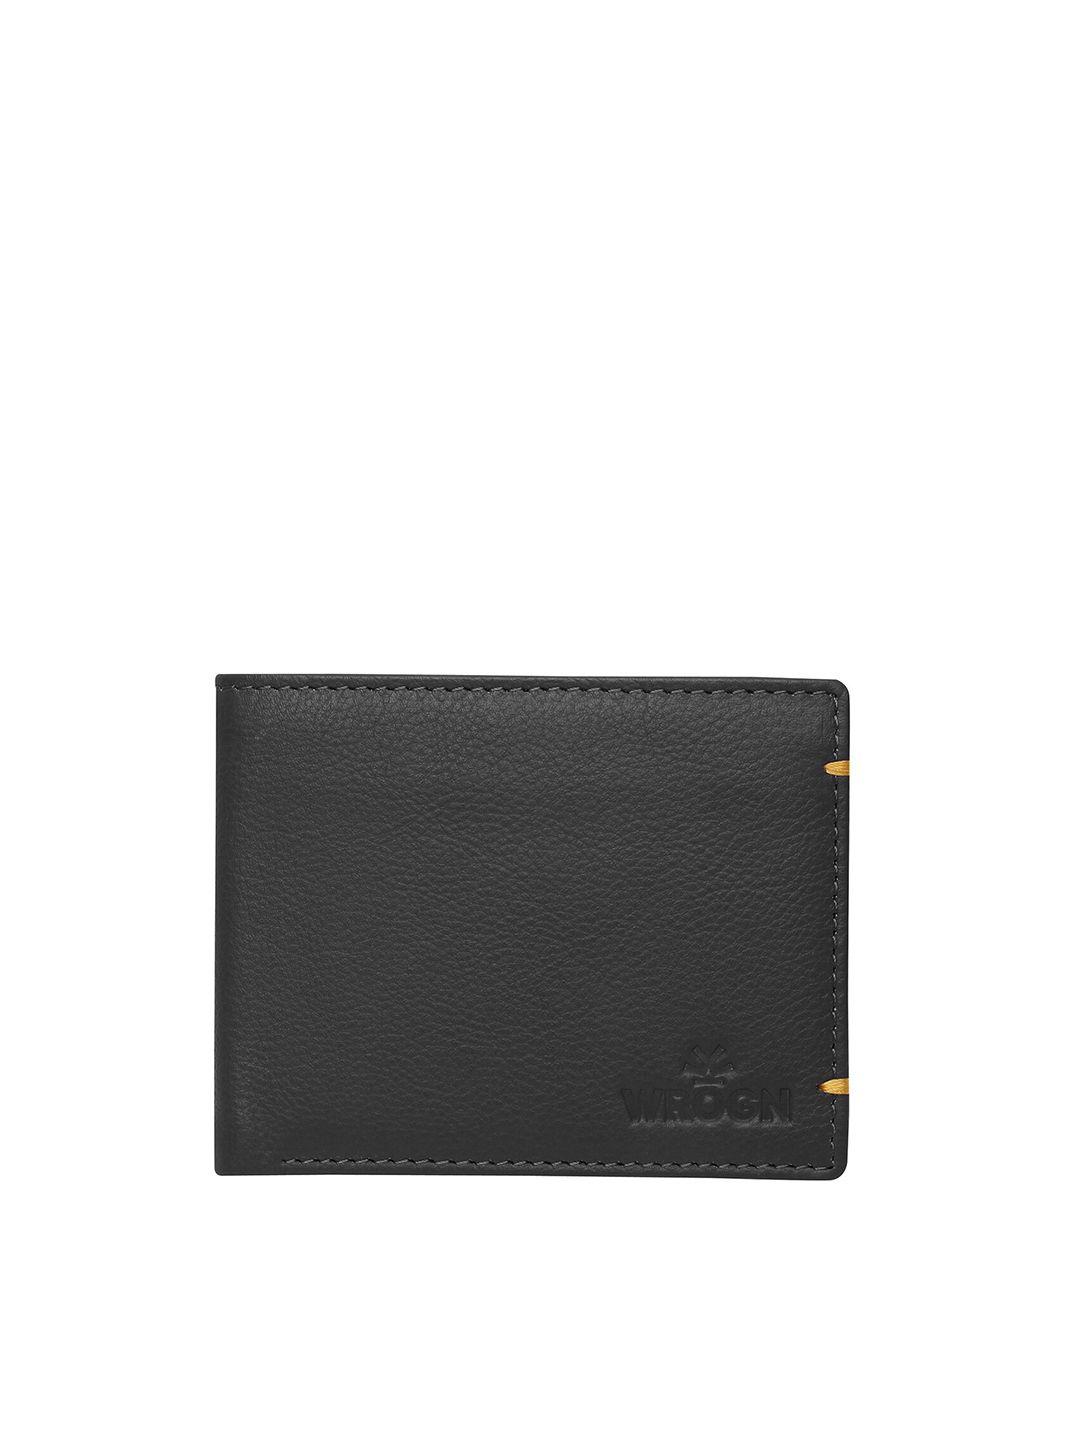 wrogn men leather two fold wallet